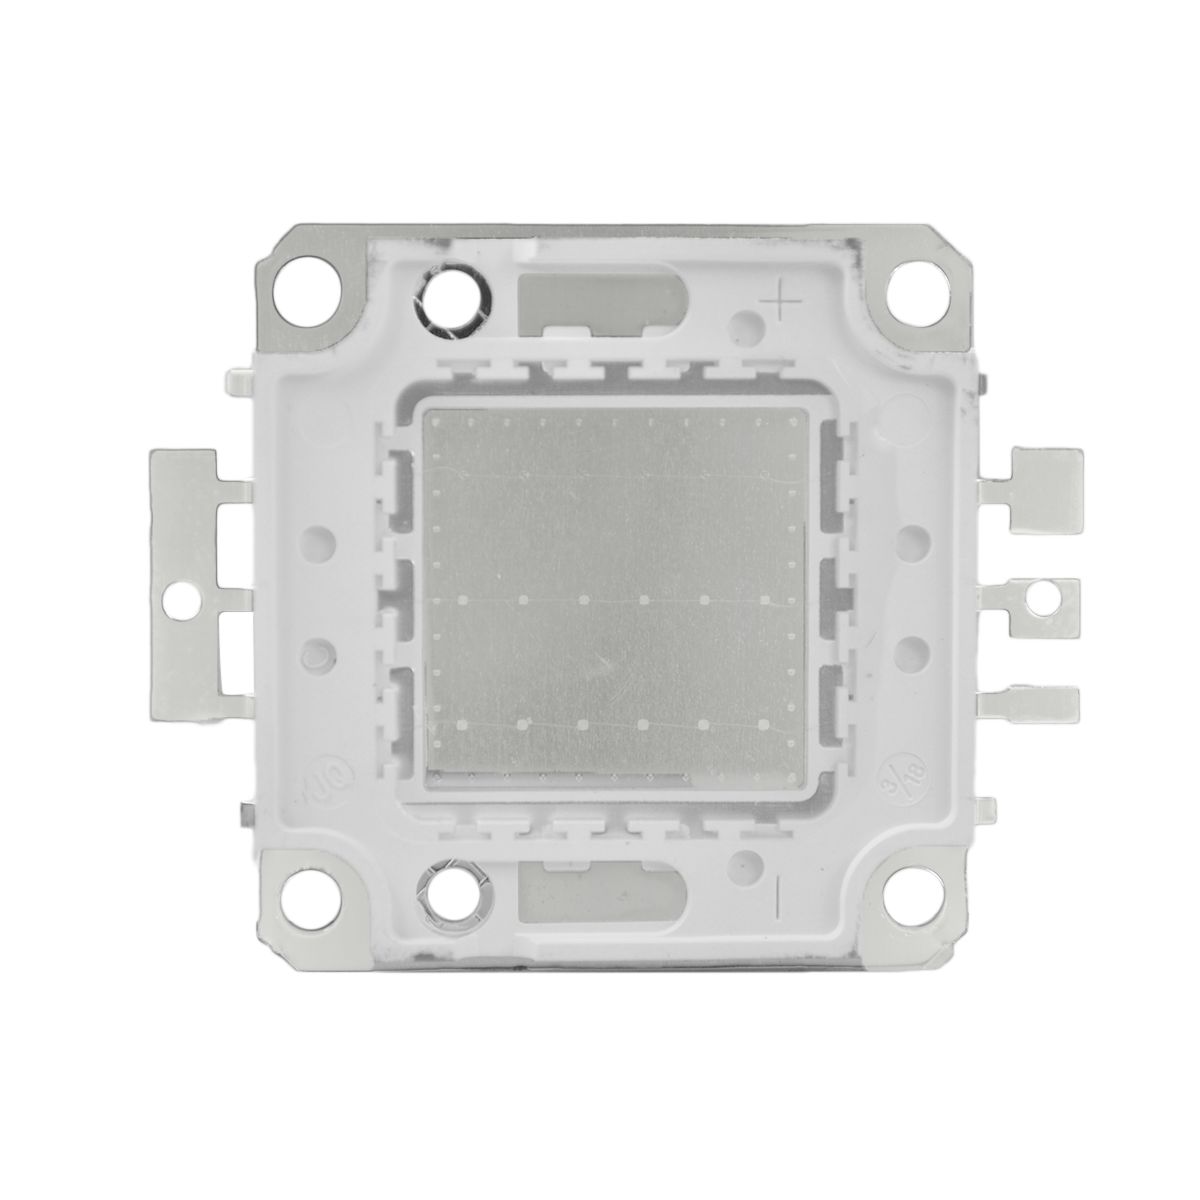 Chip Led 30w para Reposição de Refletor 30w RGB Colorido - 83123 - ARCO  ÍRIS LED